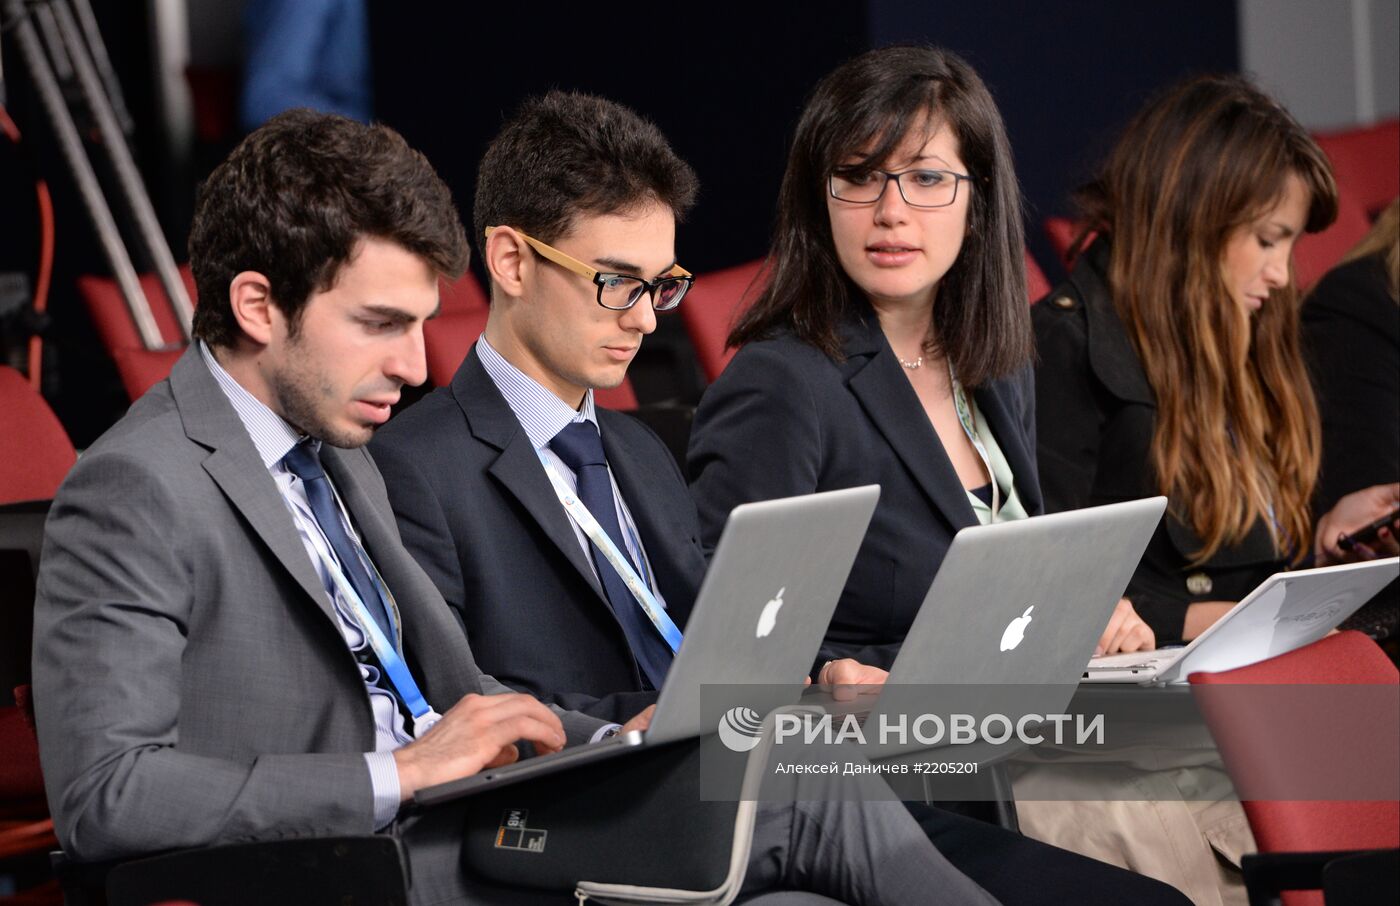 Молодежный форум "Группы двадцати" 2013. День второй